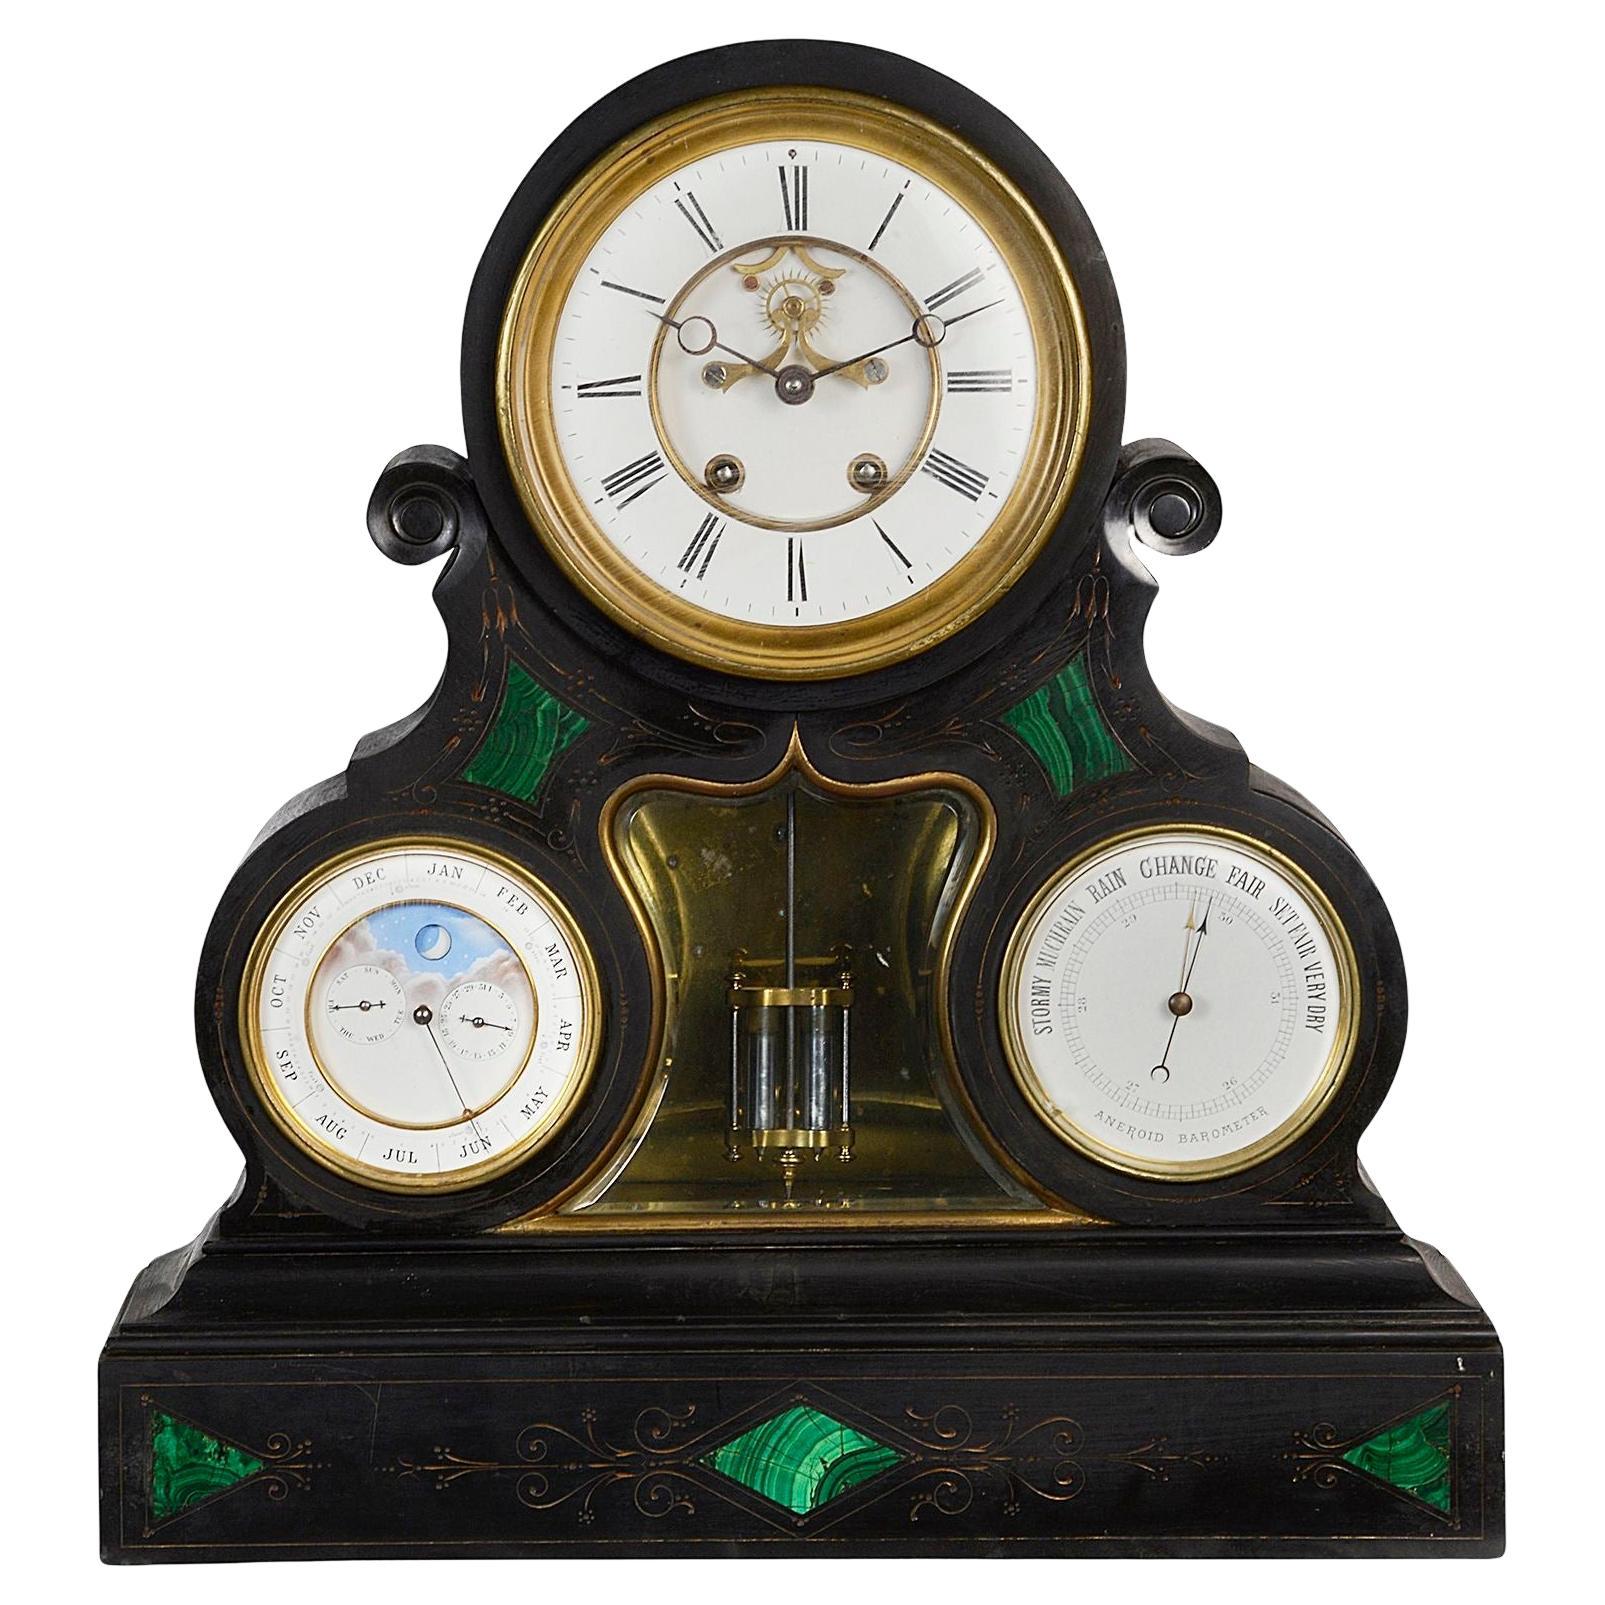 Uhr, Barometer und Kalender mit Mondphase aus dem späten 19. Jahrhundert.